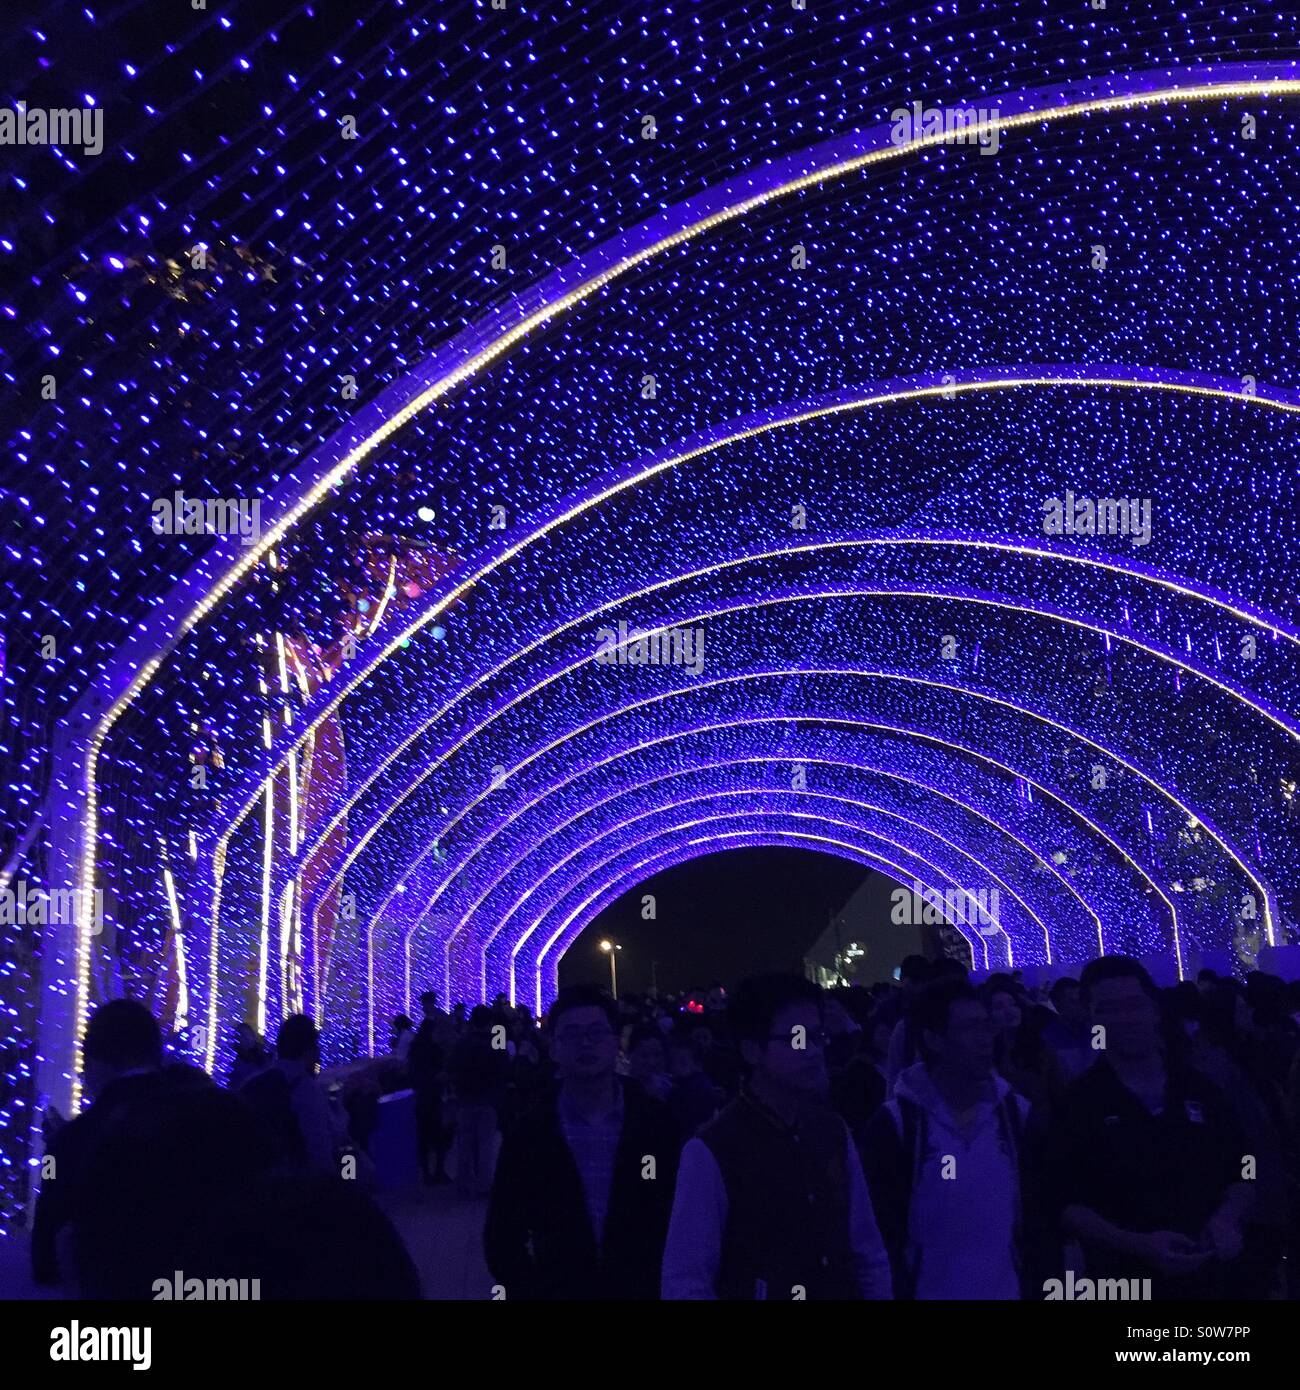 Neon Star Light Display - Shenzhen China Stock Photo